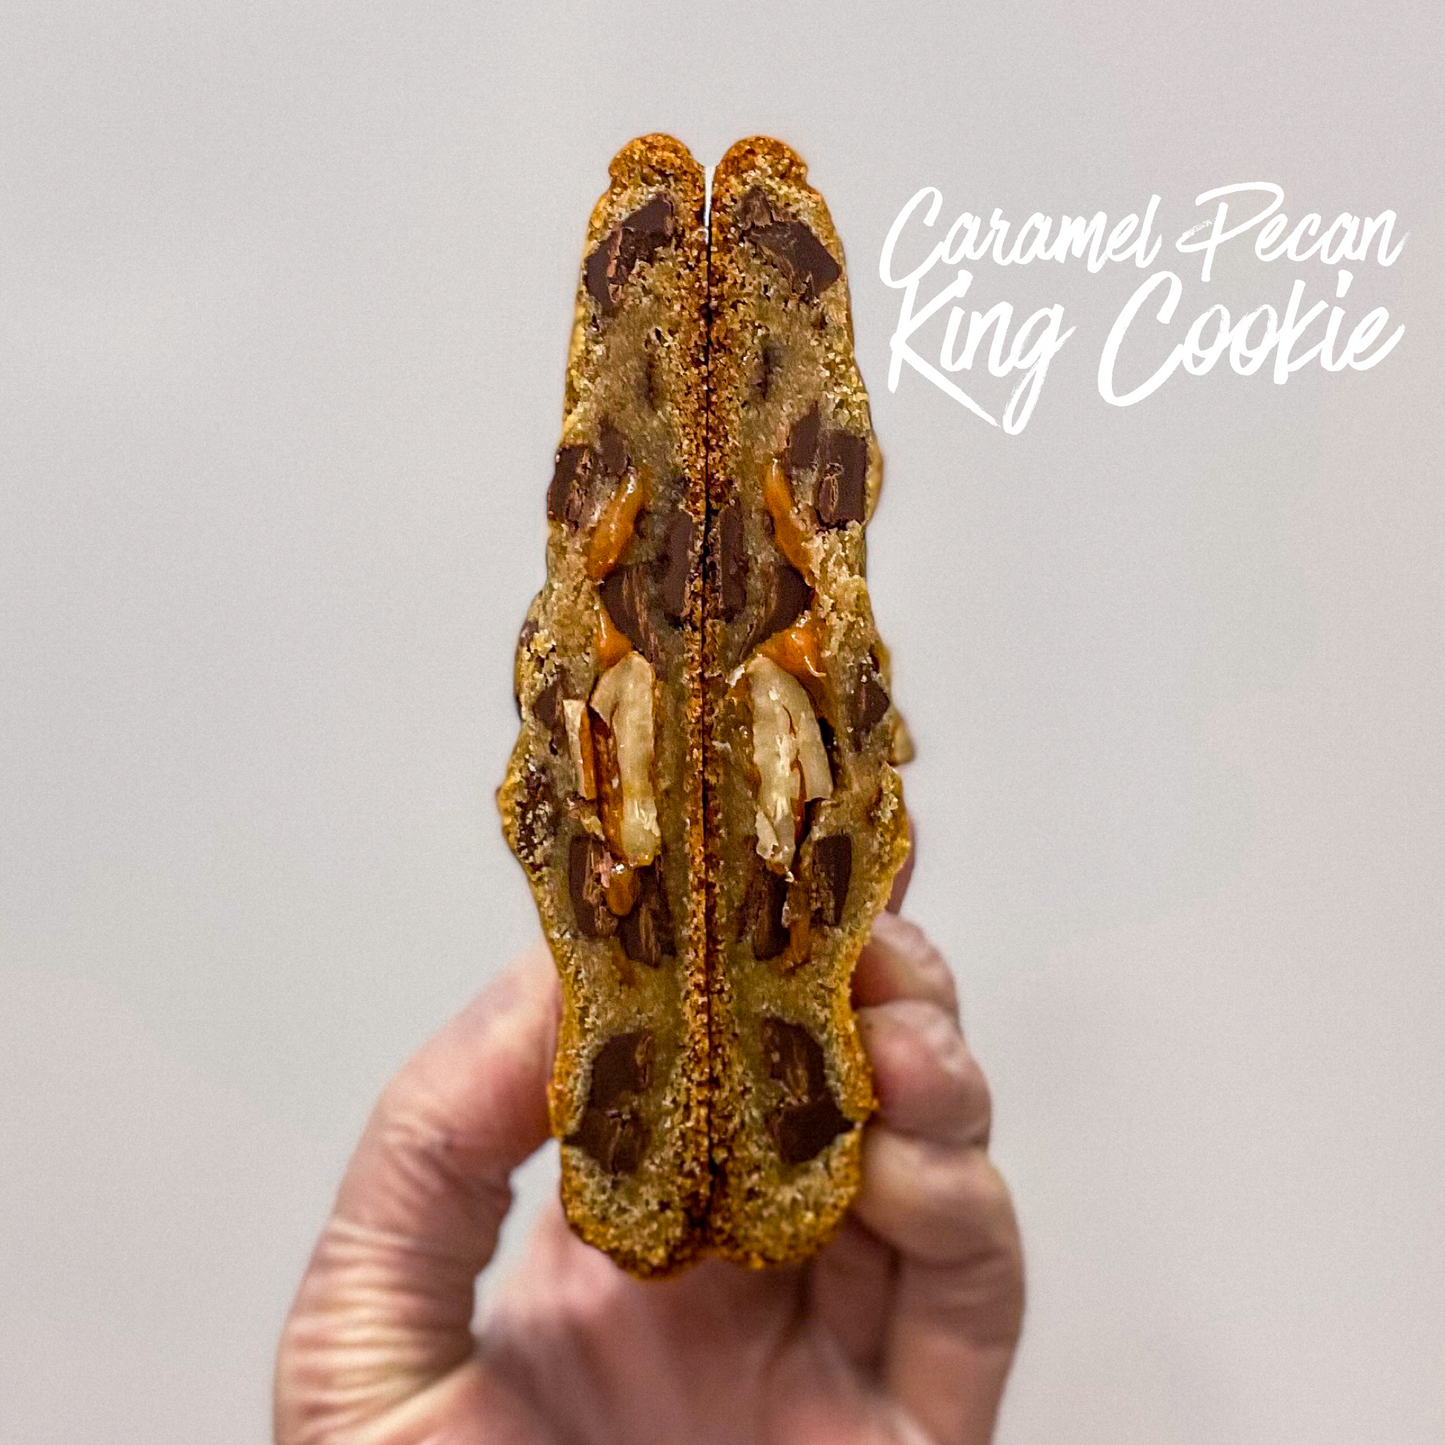 Caramel Pecan King Cookie